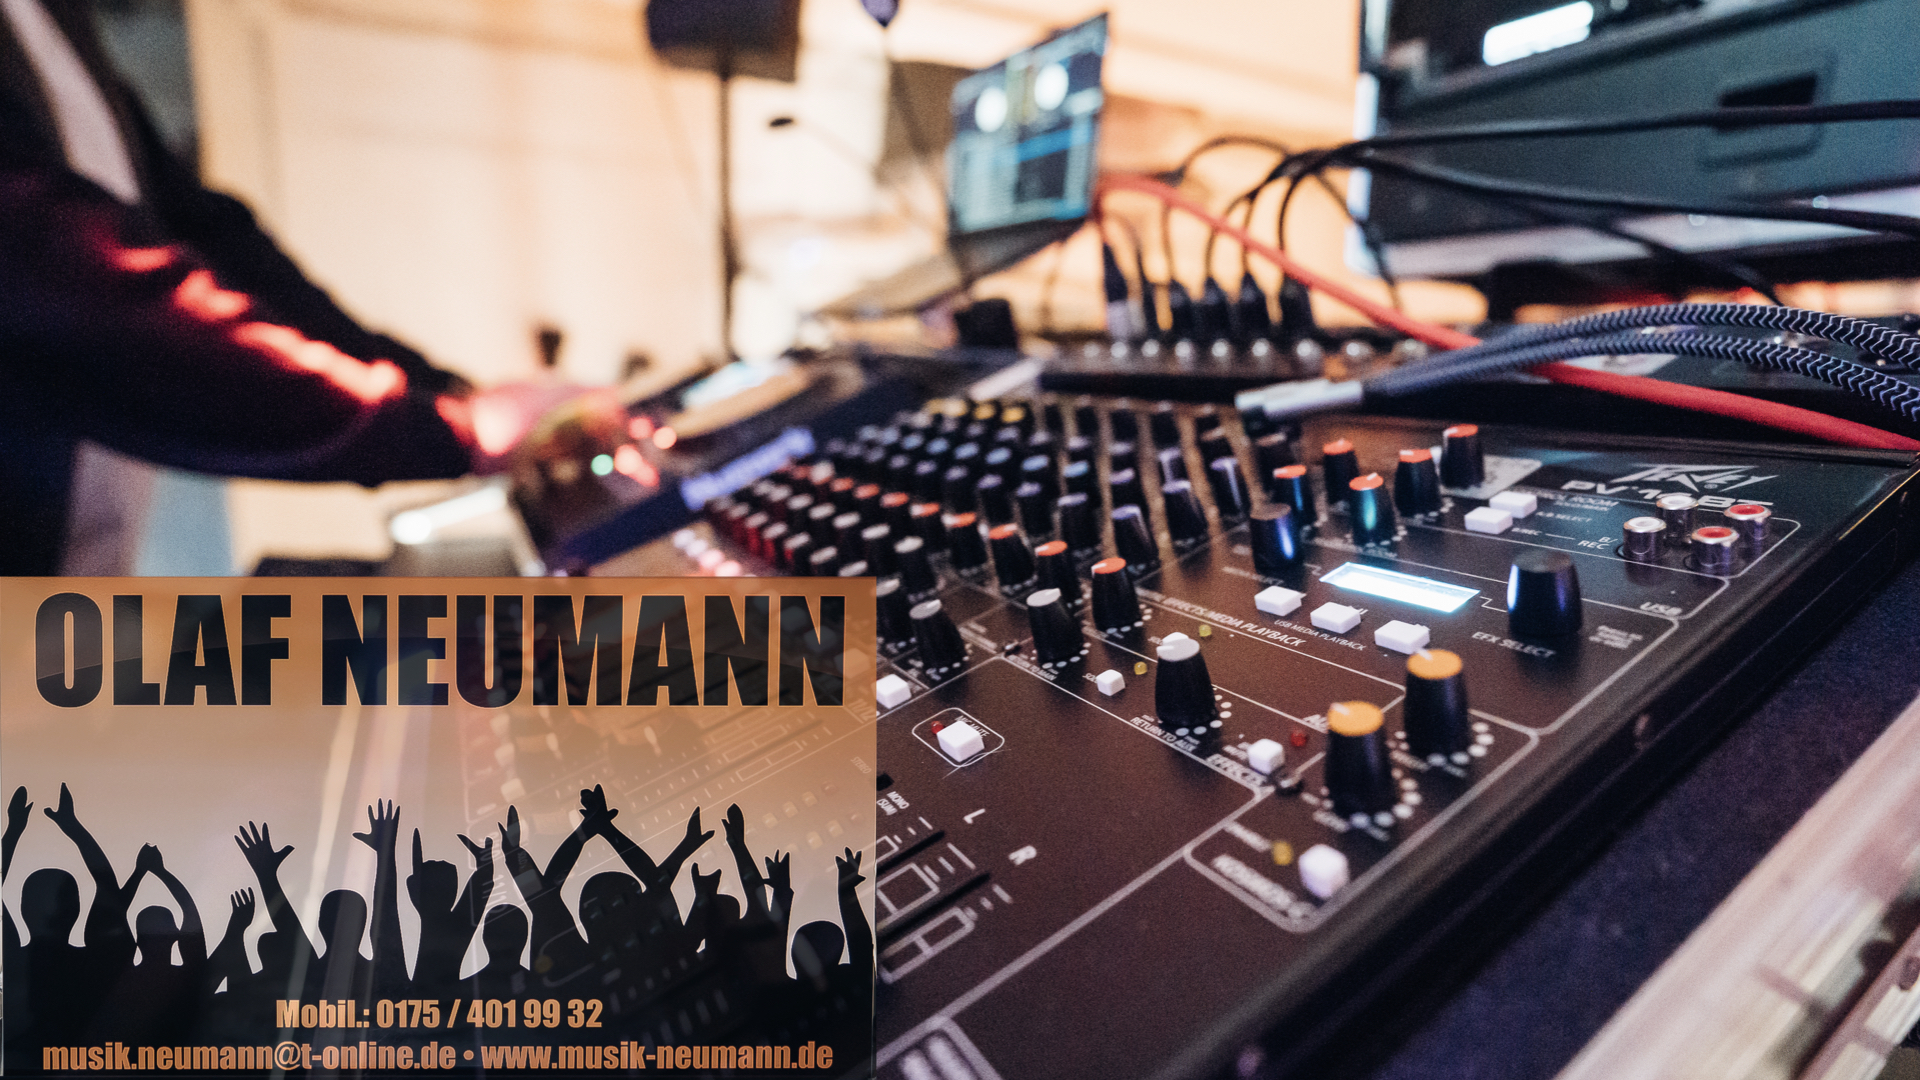 (c) Musik-neumann.de